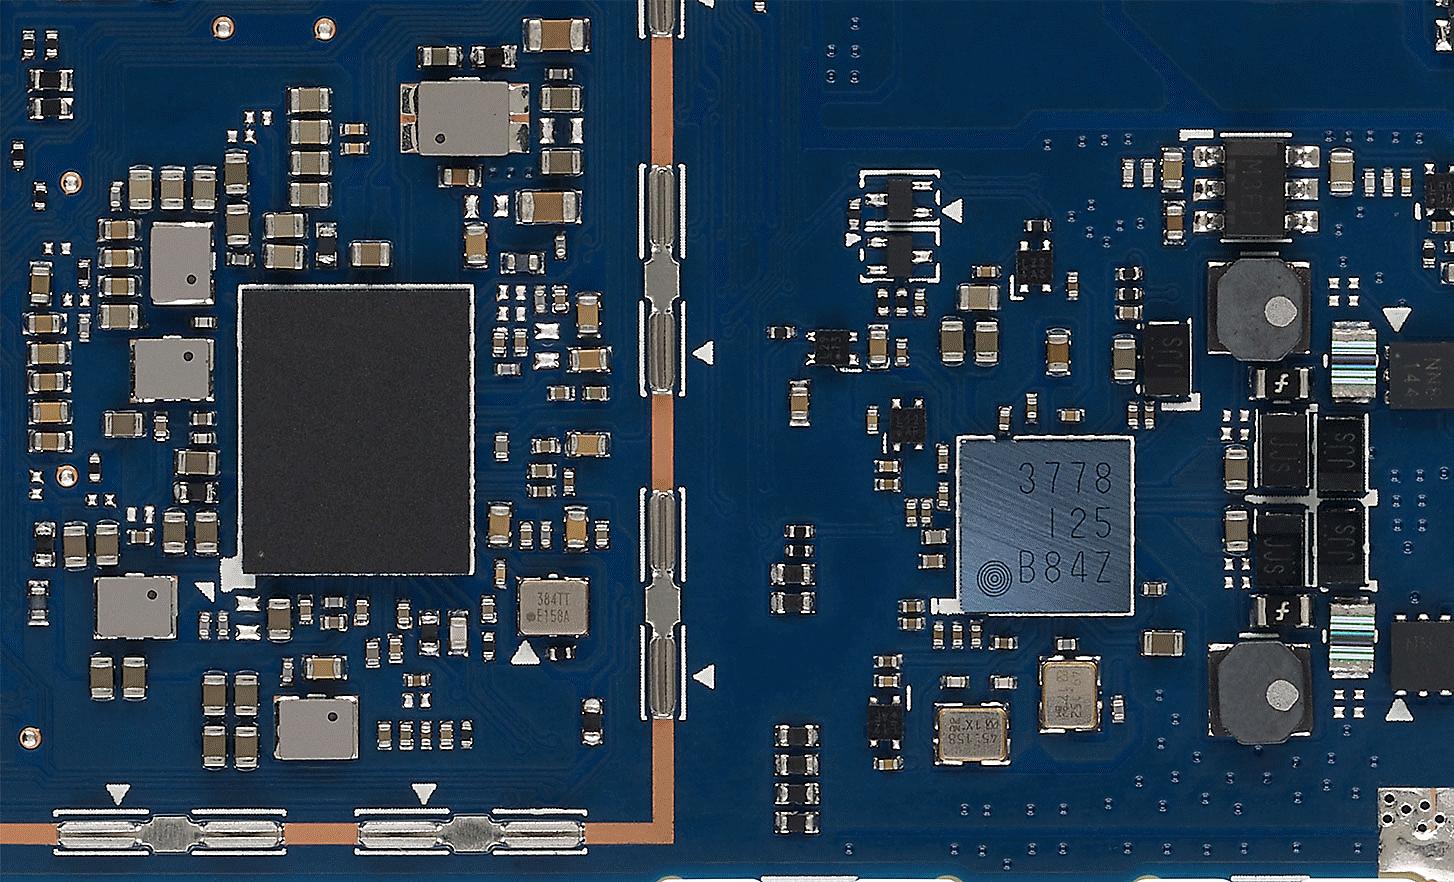 Εικόνα που δείχνει τα εξαρτήματα κορυφαίας τεχνολογίας μέσα στο περίβλημα της συσκευής NW-A306.